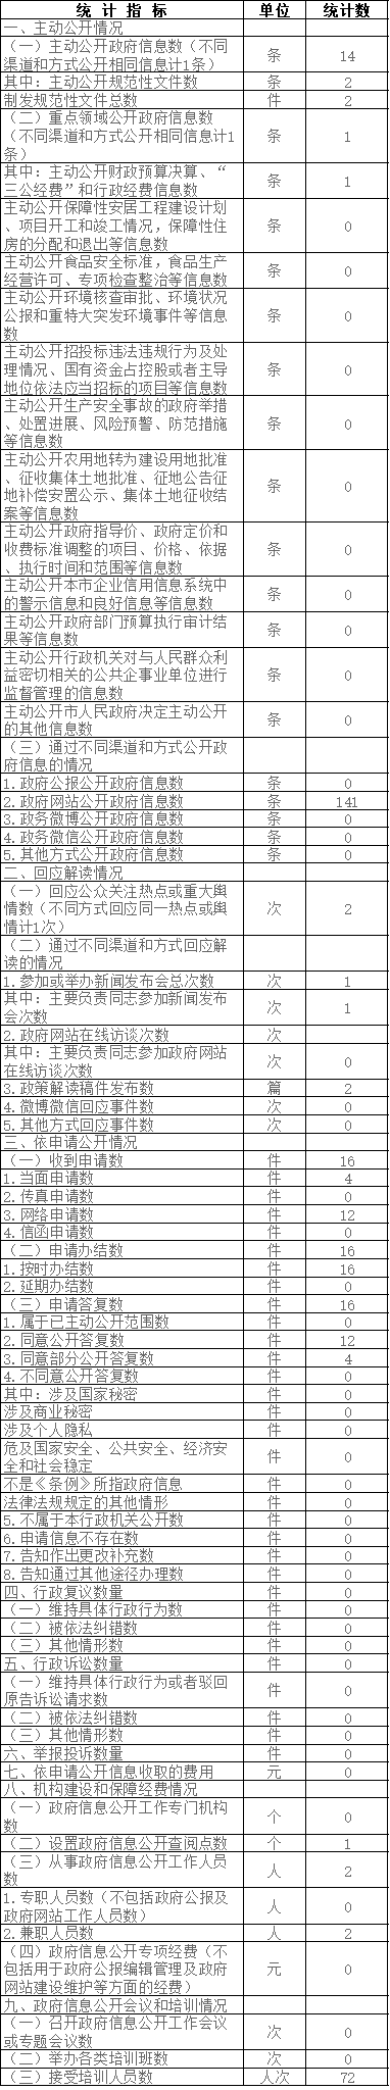 北京住房公积金管理中心政府信息公开情况统计表(2017年度)